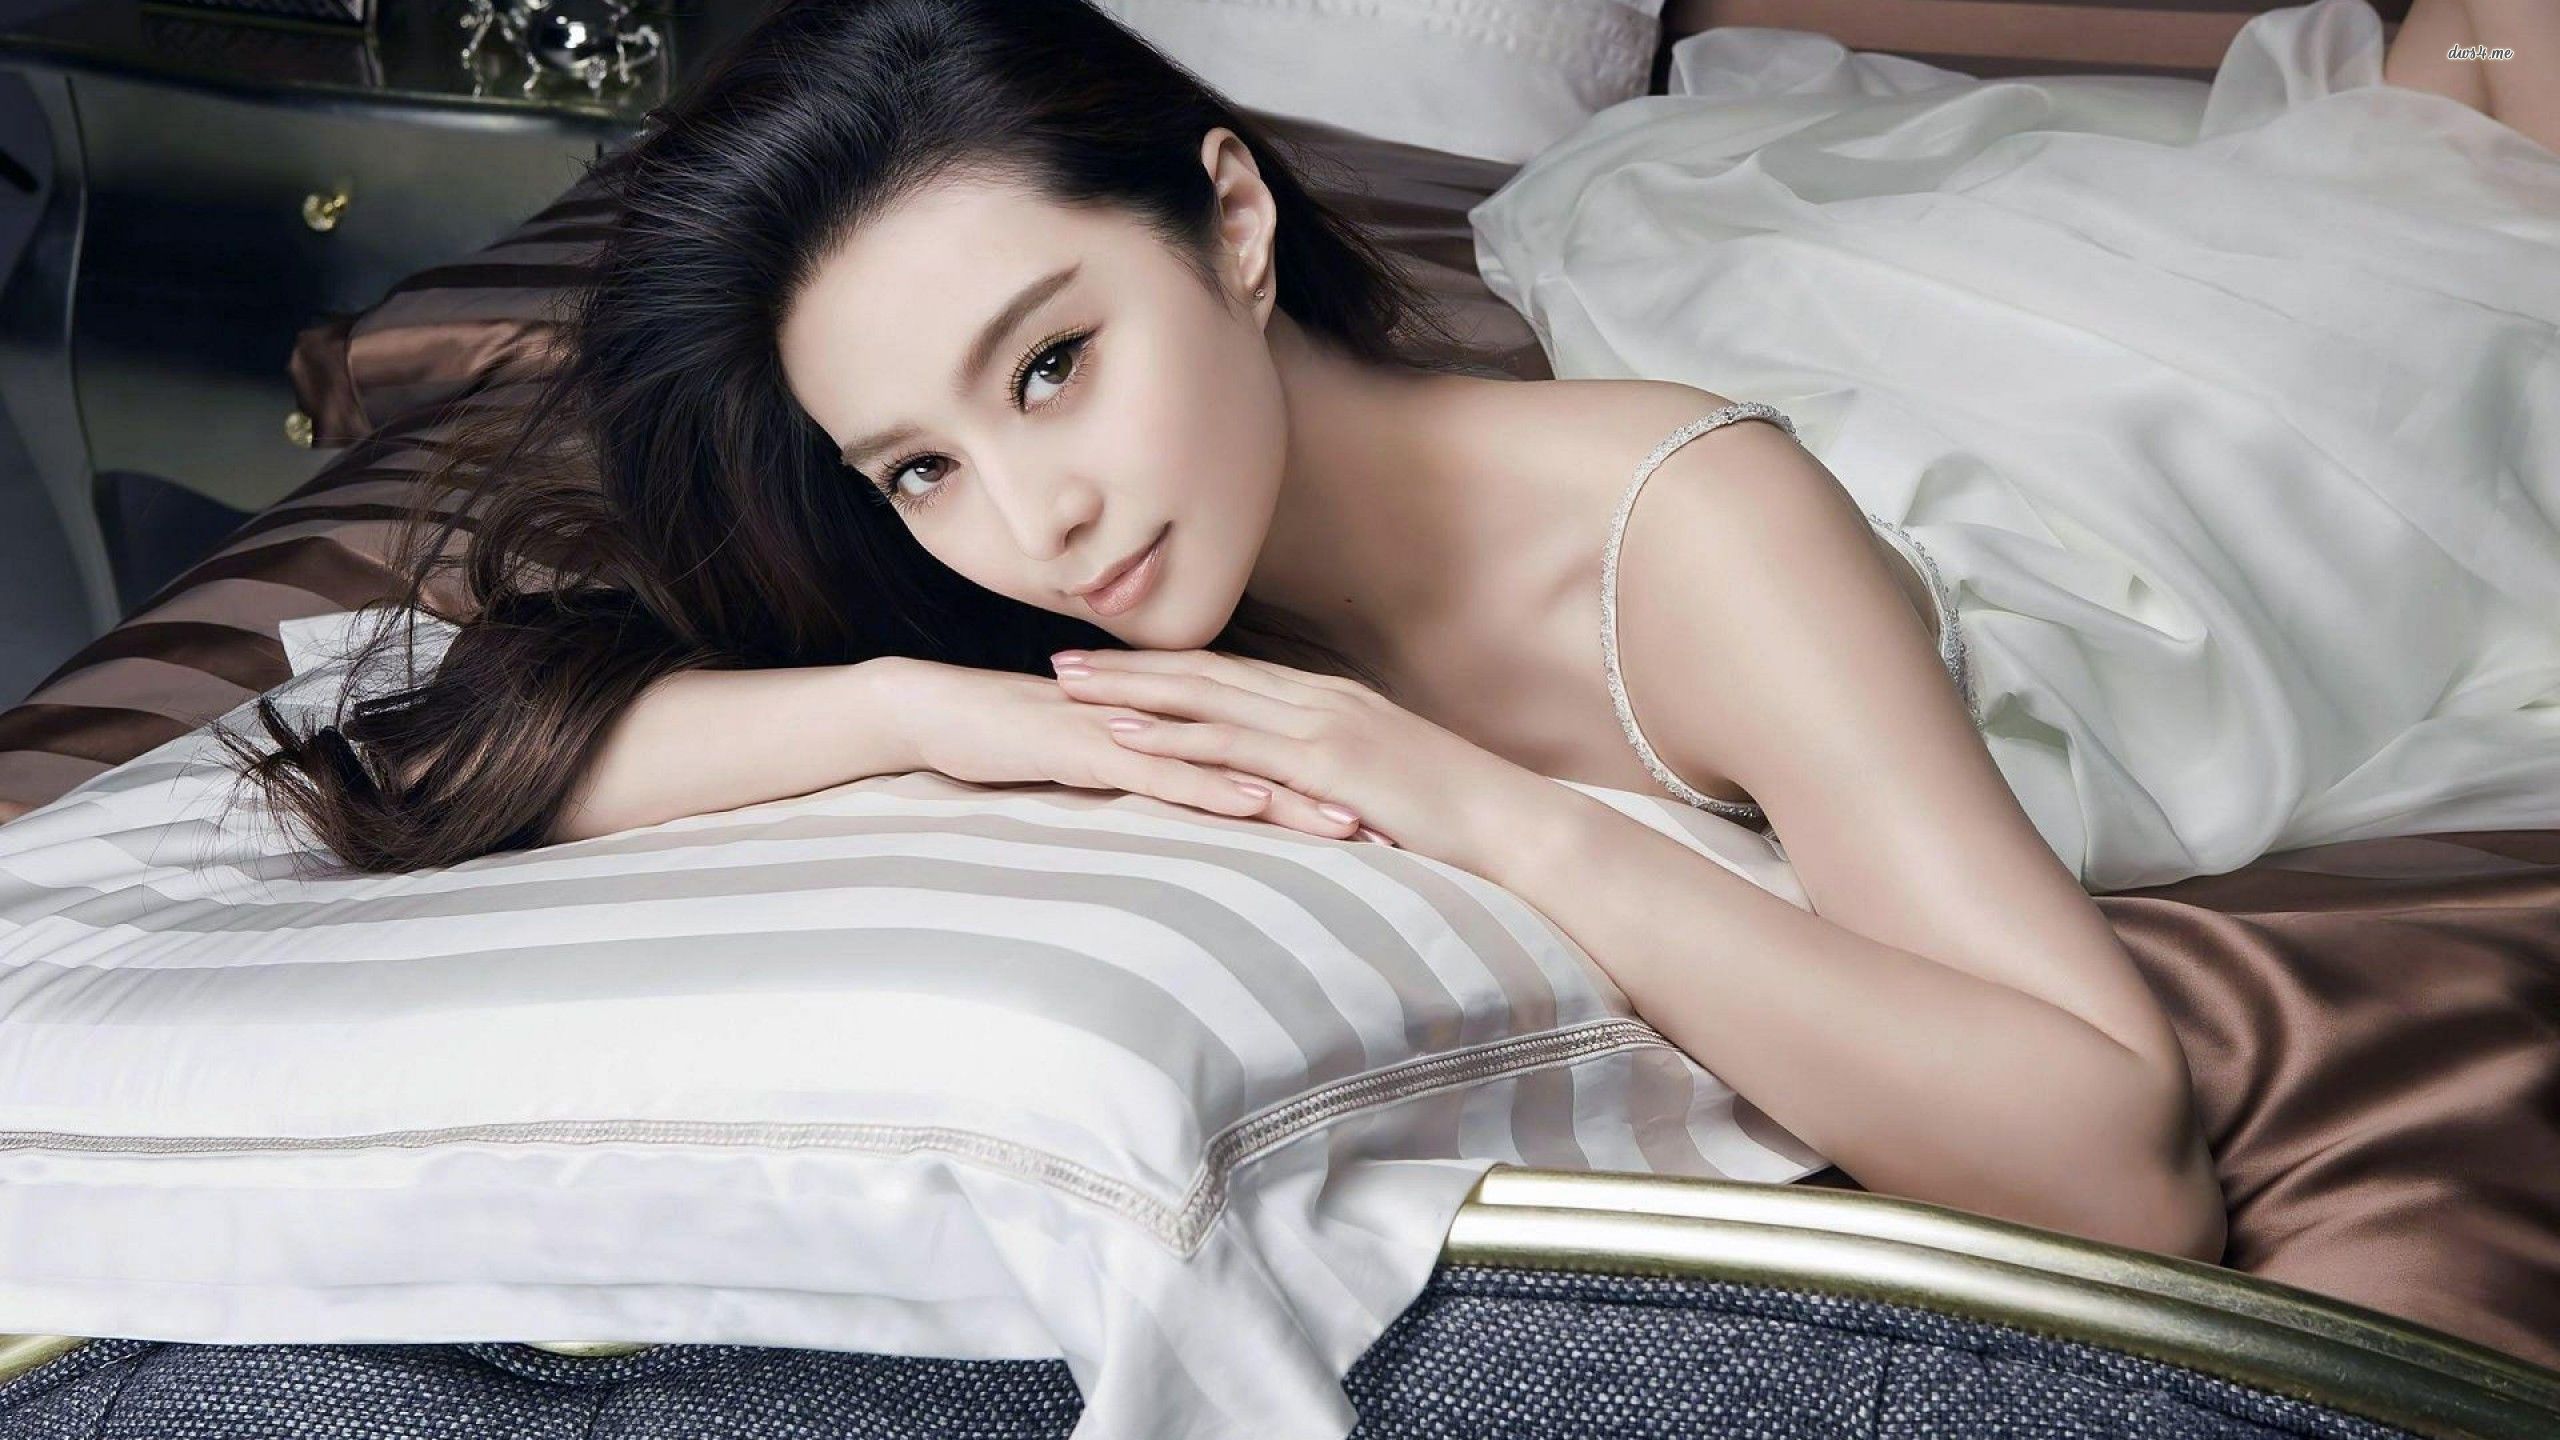 Fan Bingbing In Bed Wallpaper - Sexy Asian Models In Bed , HD Wallpaper & Backgrounds